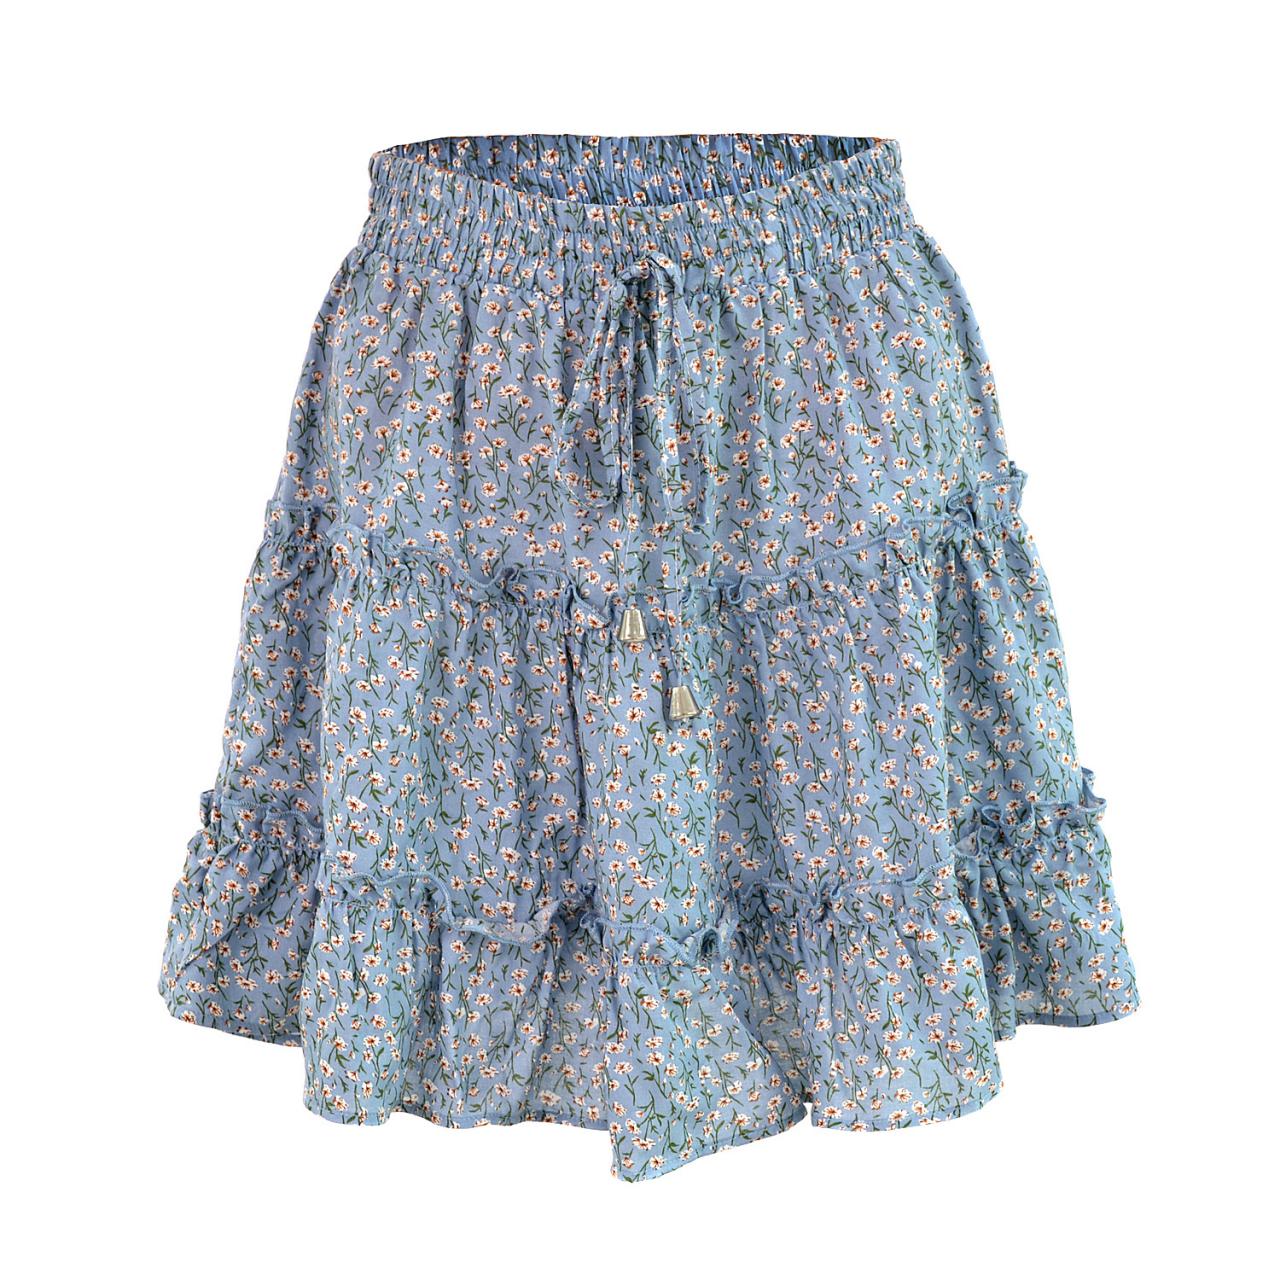 Women Mini Skirt High Waist Ruffles Casual Summer Beach Boho Floral Printed Short A-Line Skirt blue floral